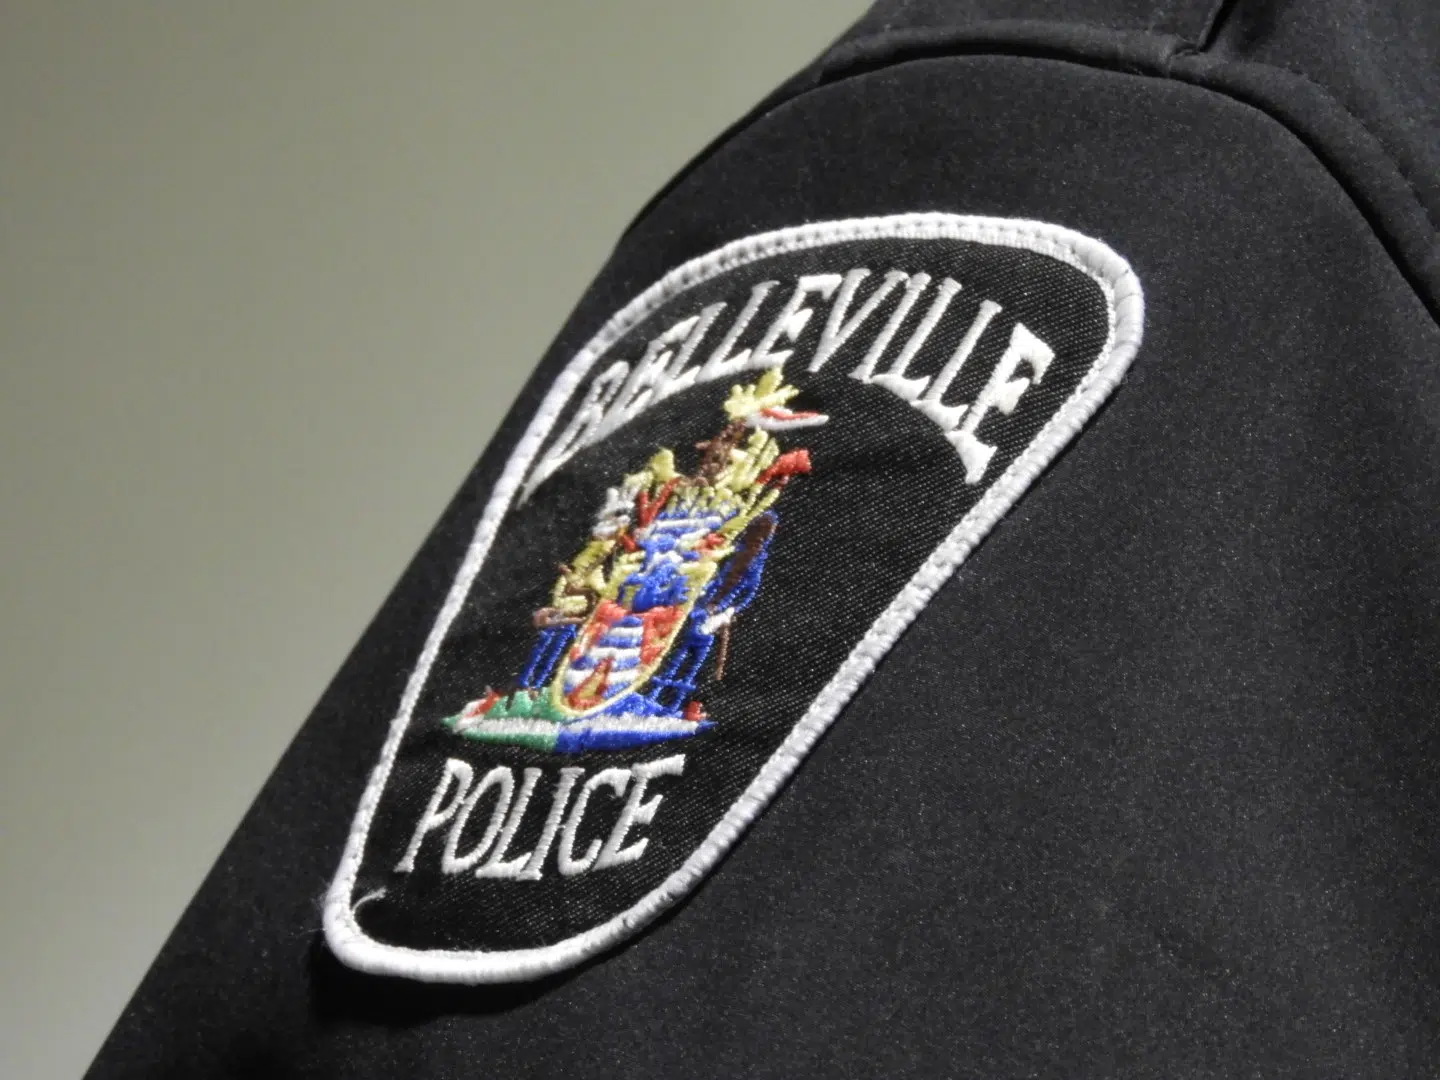 Belleville Police notes